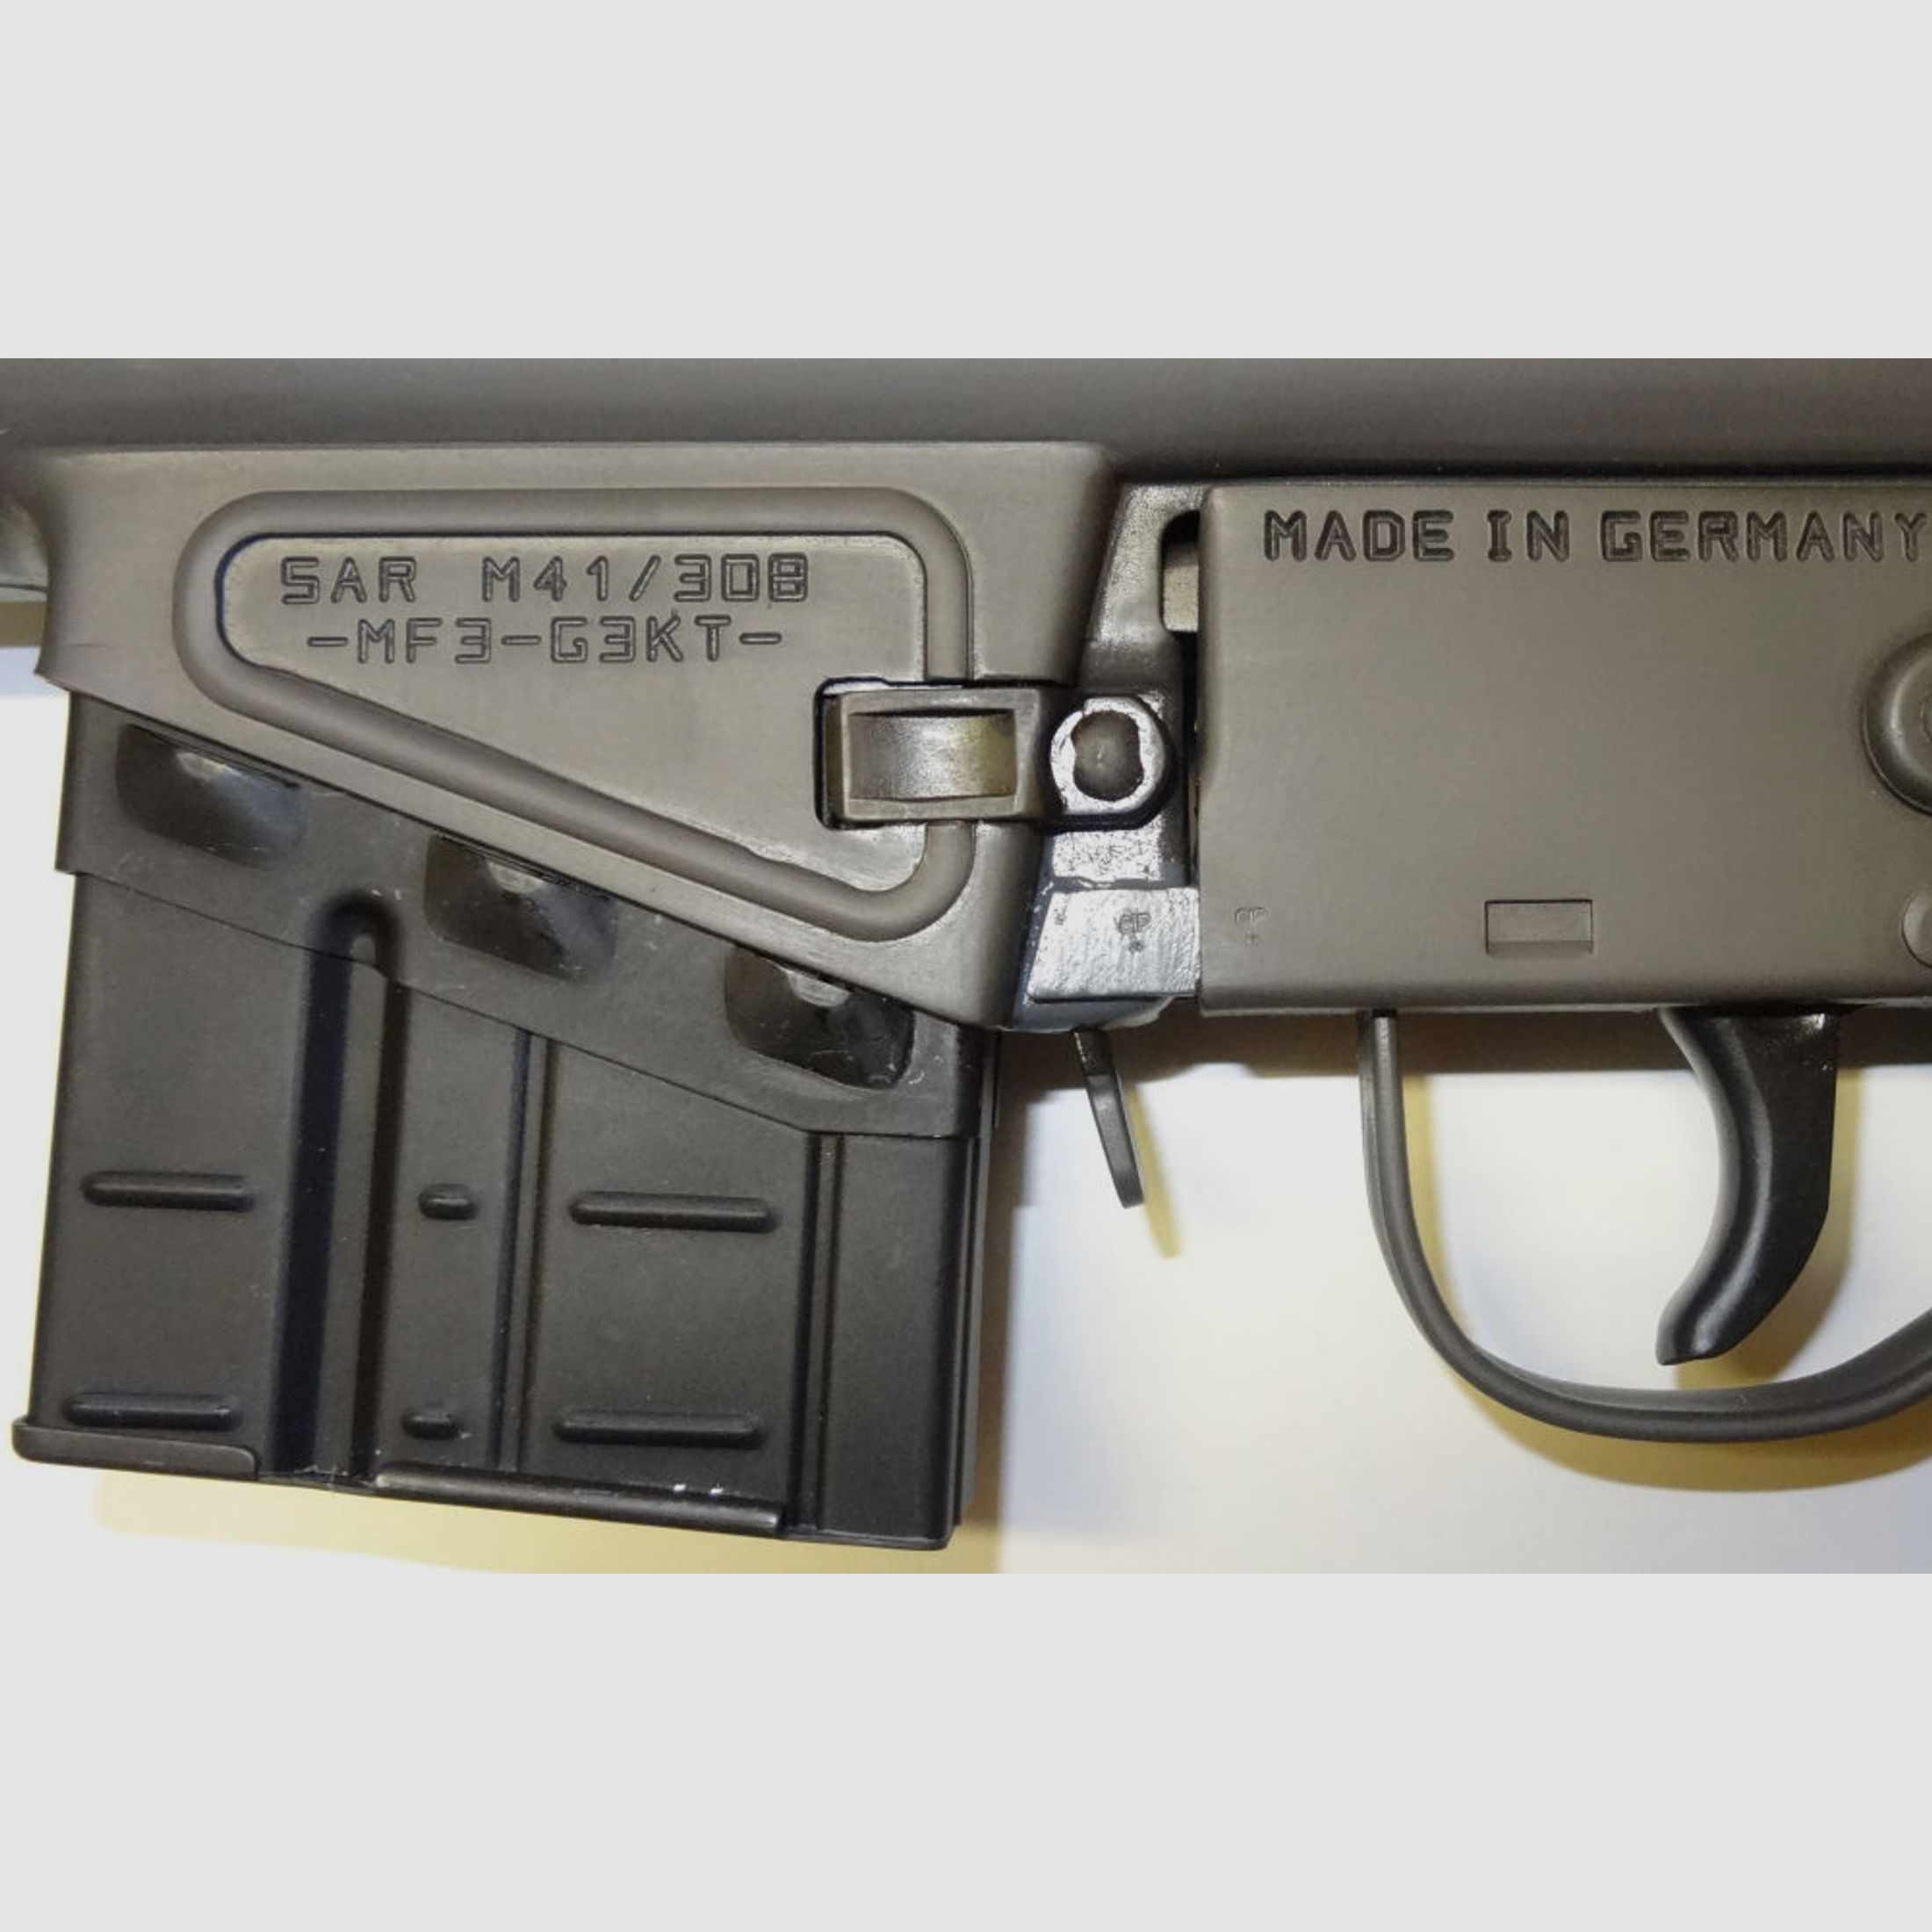 Schwaben Arms GmbH	 SAR M41 Umbausatz Magazinhalter Unten für z.B. HK41, HeGe308, MKE, G3, Klone